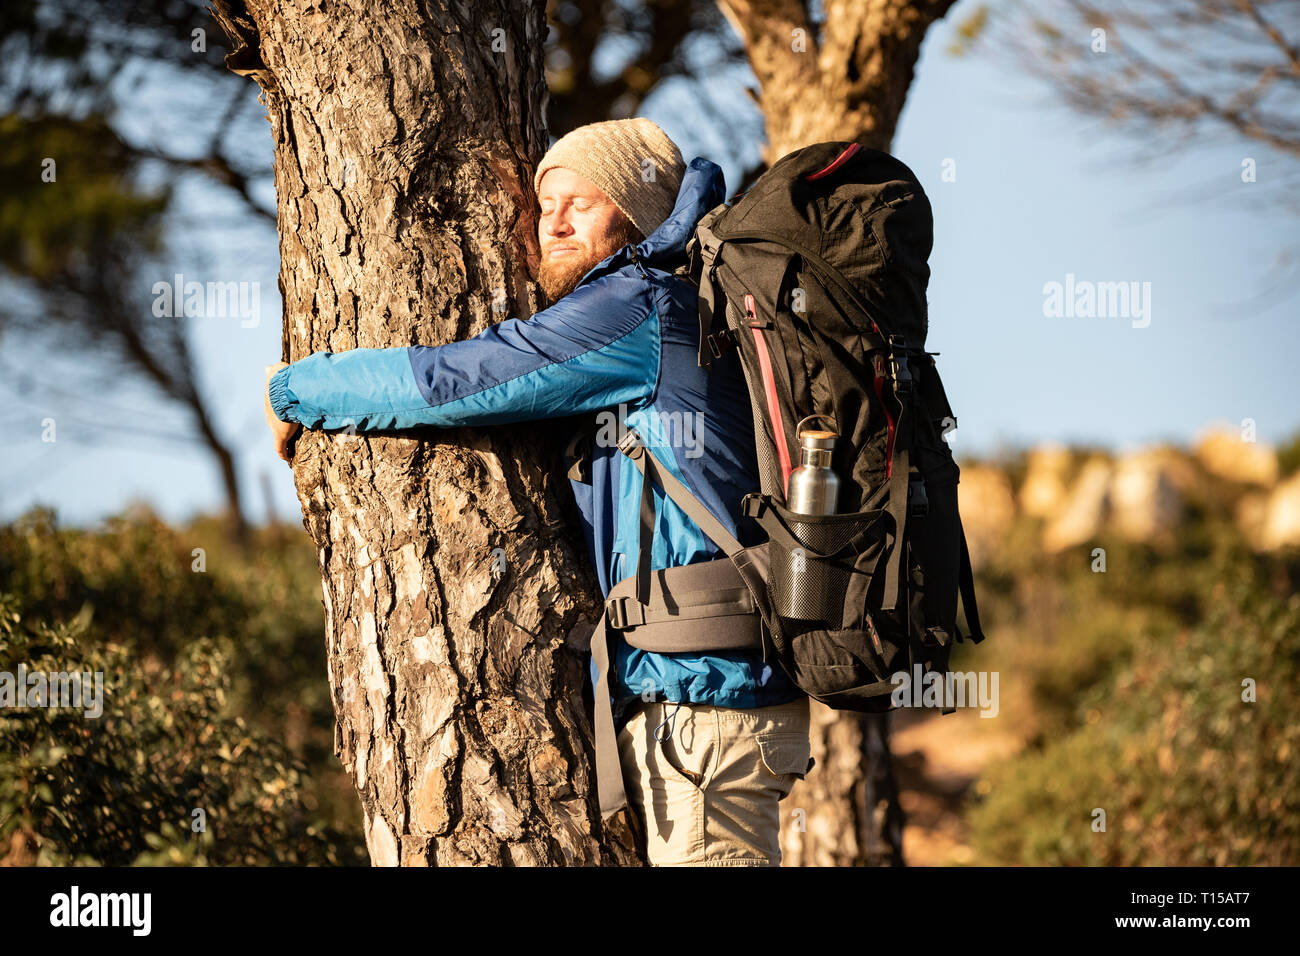 Spanien, Andalusien, Tarifa, Mann umarmt Baum, Baum Stock Photo